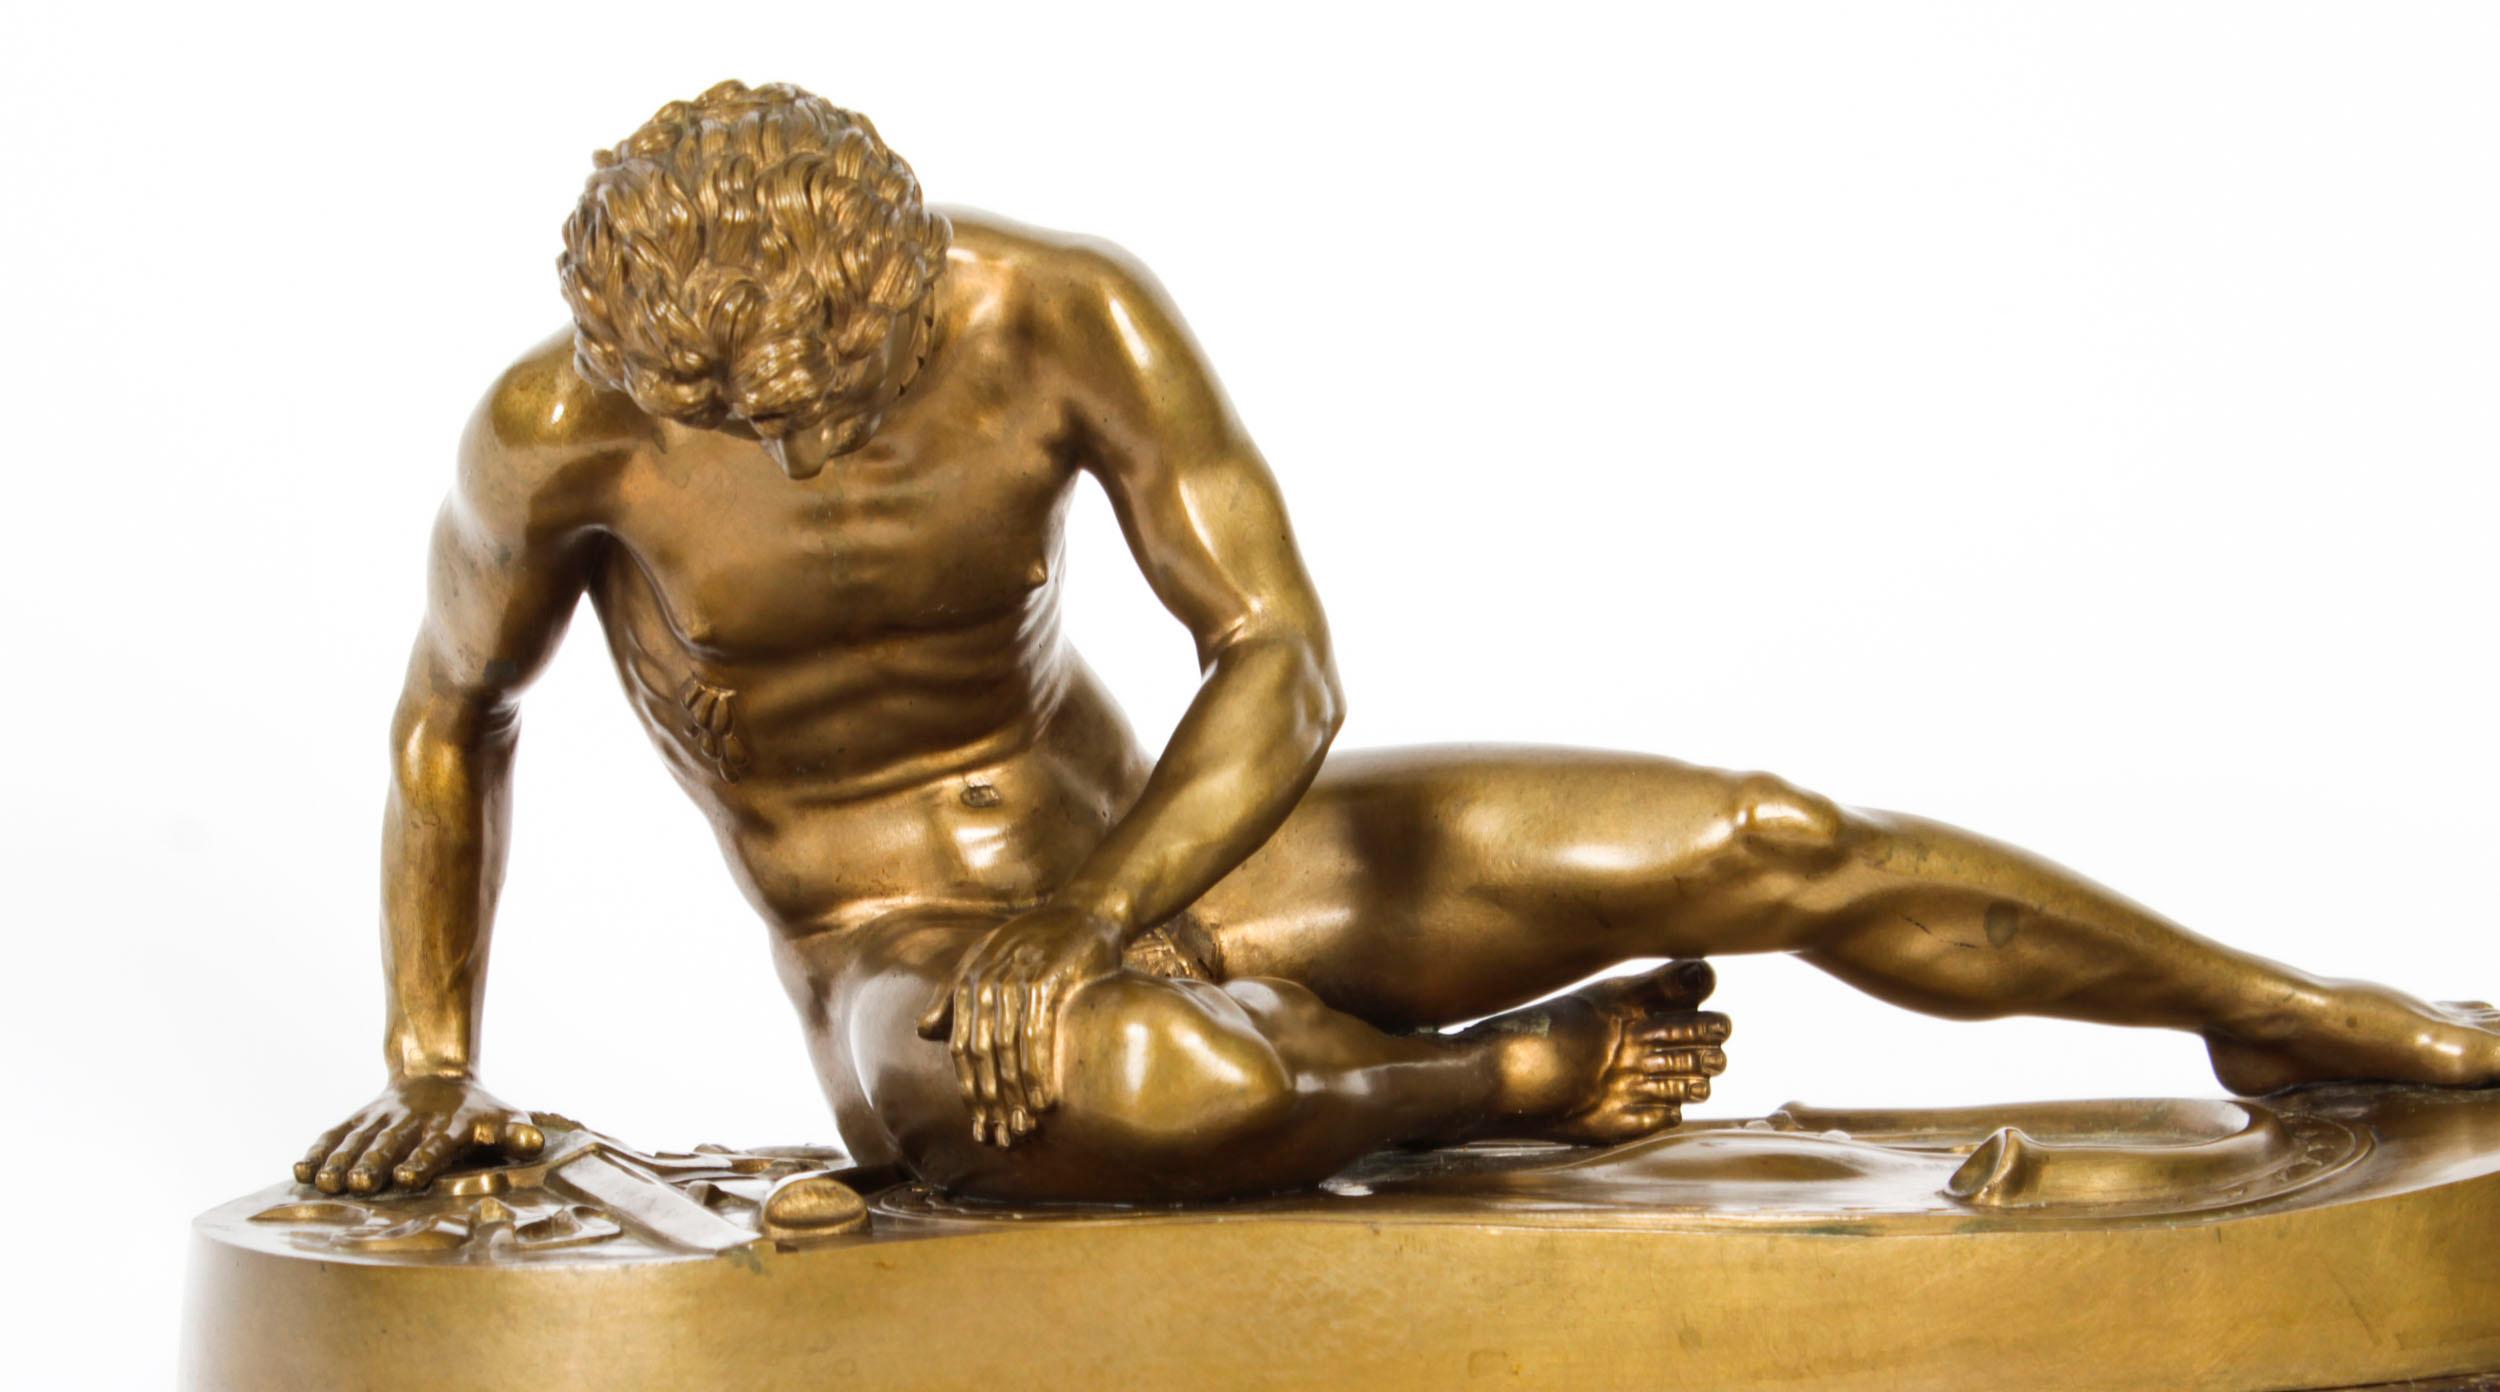 Il s'agit d'une magnifique figurine italienne ancienne du Grand Tour.  sculpture en bronze patiné doré représentant un gladiateur blessé connu sous le nom de  